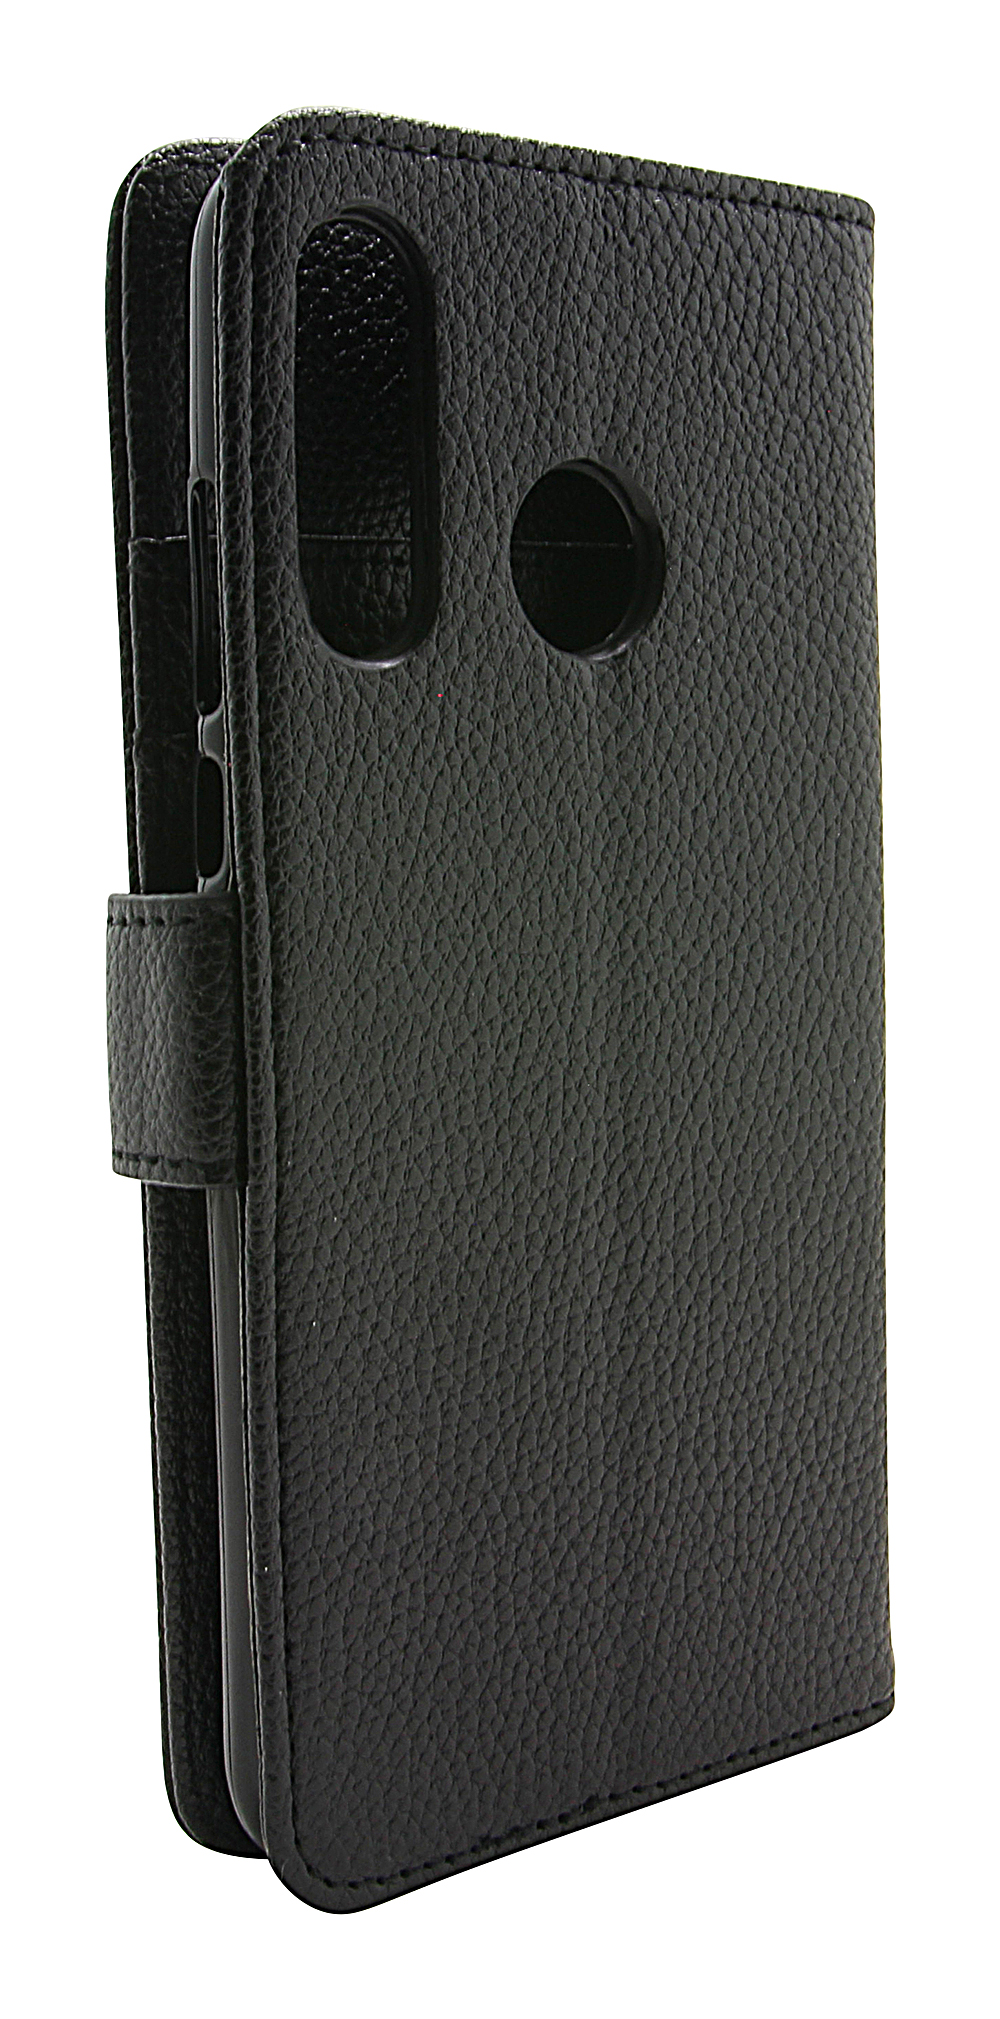 billigamobilskydd.seNew Standcase Wallet Huawei P30 Lite